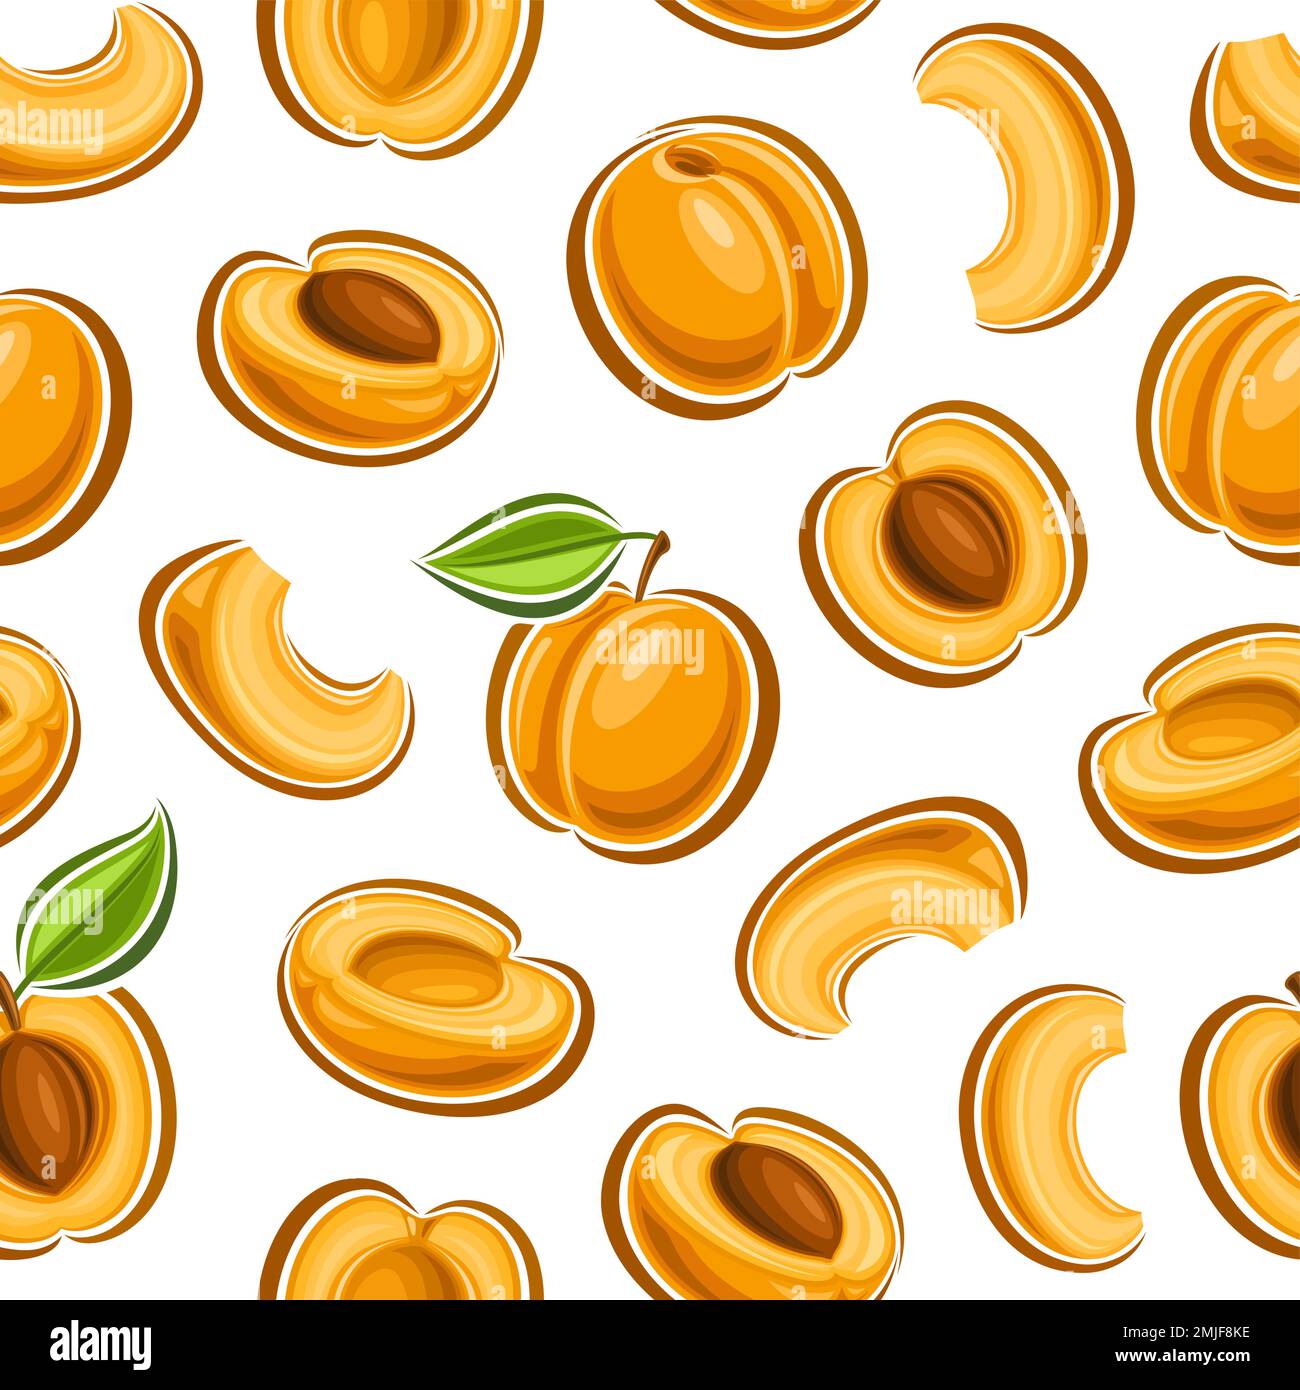 Vector Apricot sans couture motif, fond carré répété avec illustrations découpées d'abricots mûrs hachés avec feuilles vertes pour papier d'emballage, gr Illustration de Vecteur